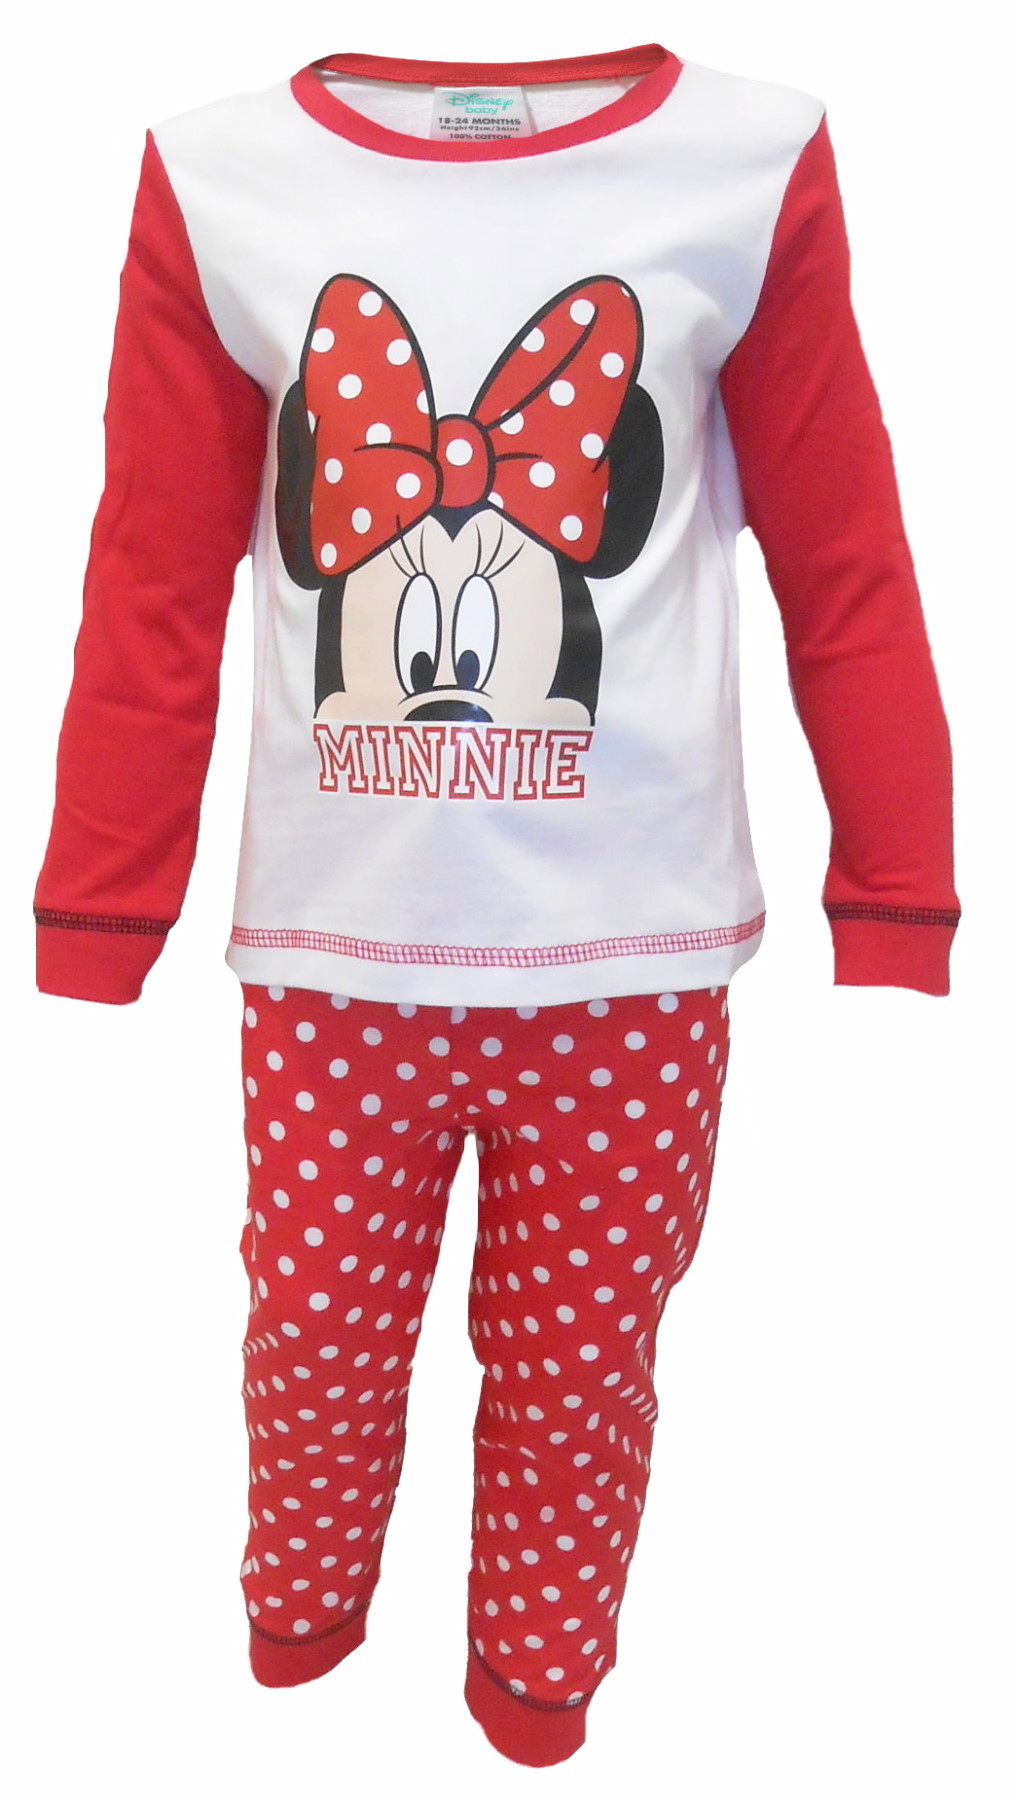 Minnie Mouse Pyjamas PG265 (2).JPG  by Thingimijigs